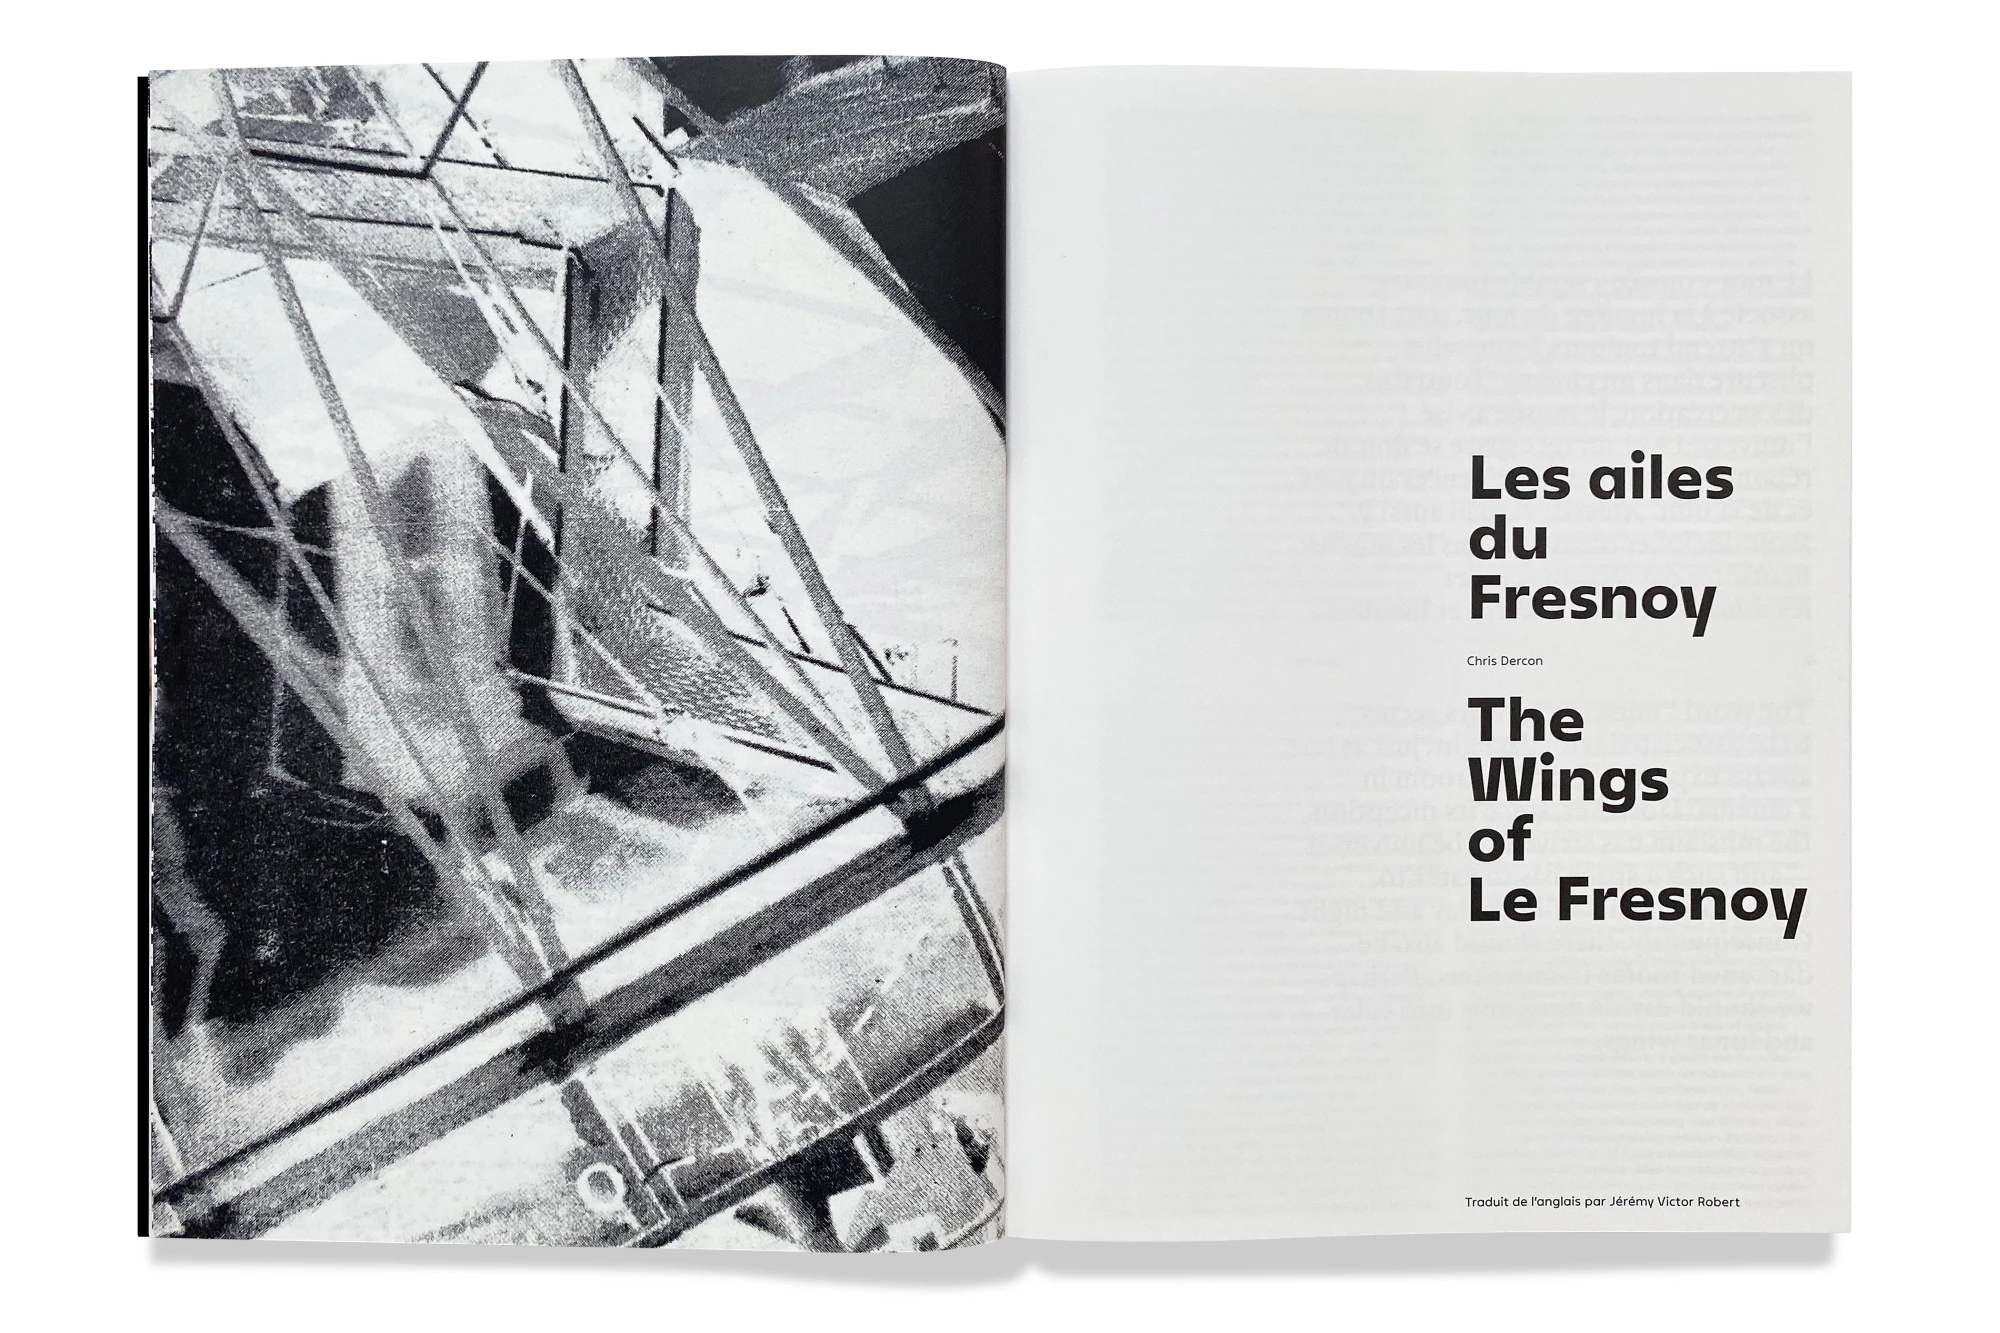 Léo Grunstein - Panorama 25, Le Fresnoy – Studio national des arts contemporains, Publication, 2023